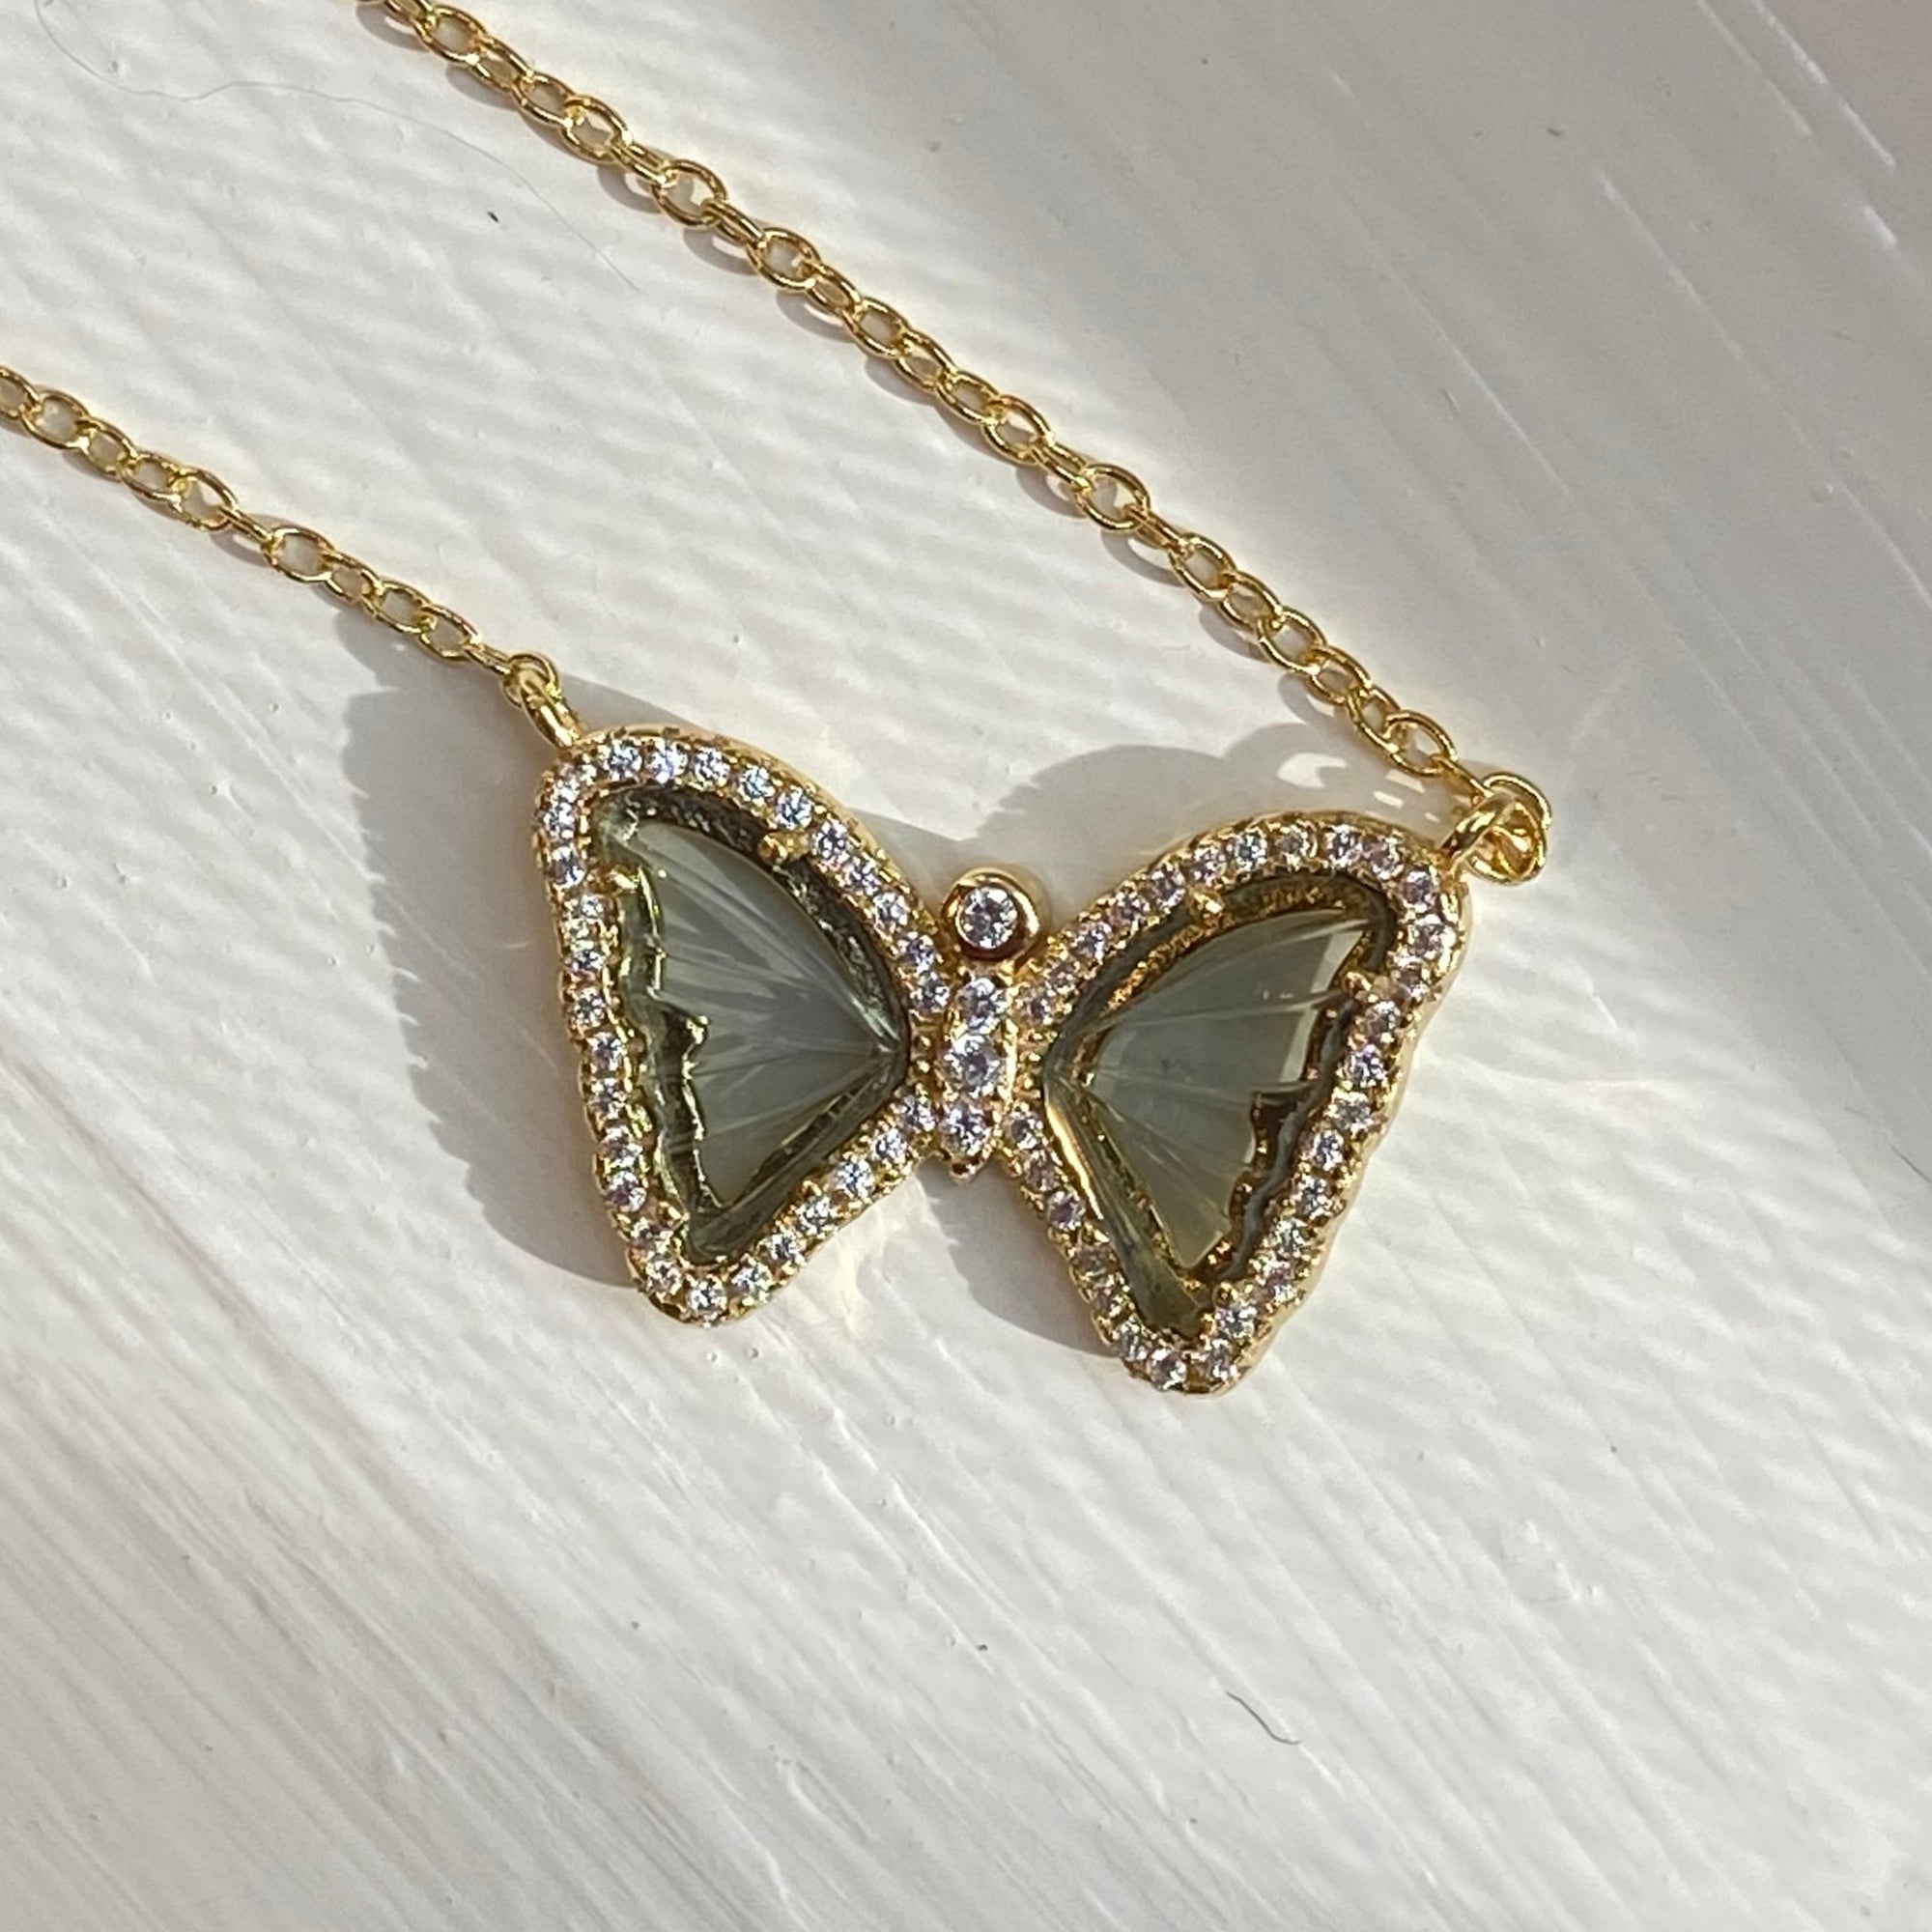 Mini Gemstone Butterfly Necklace in Smoky Quartz